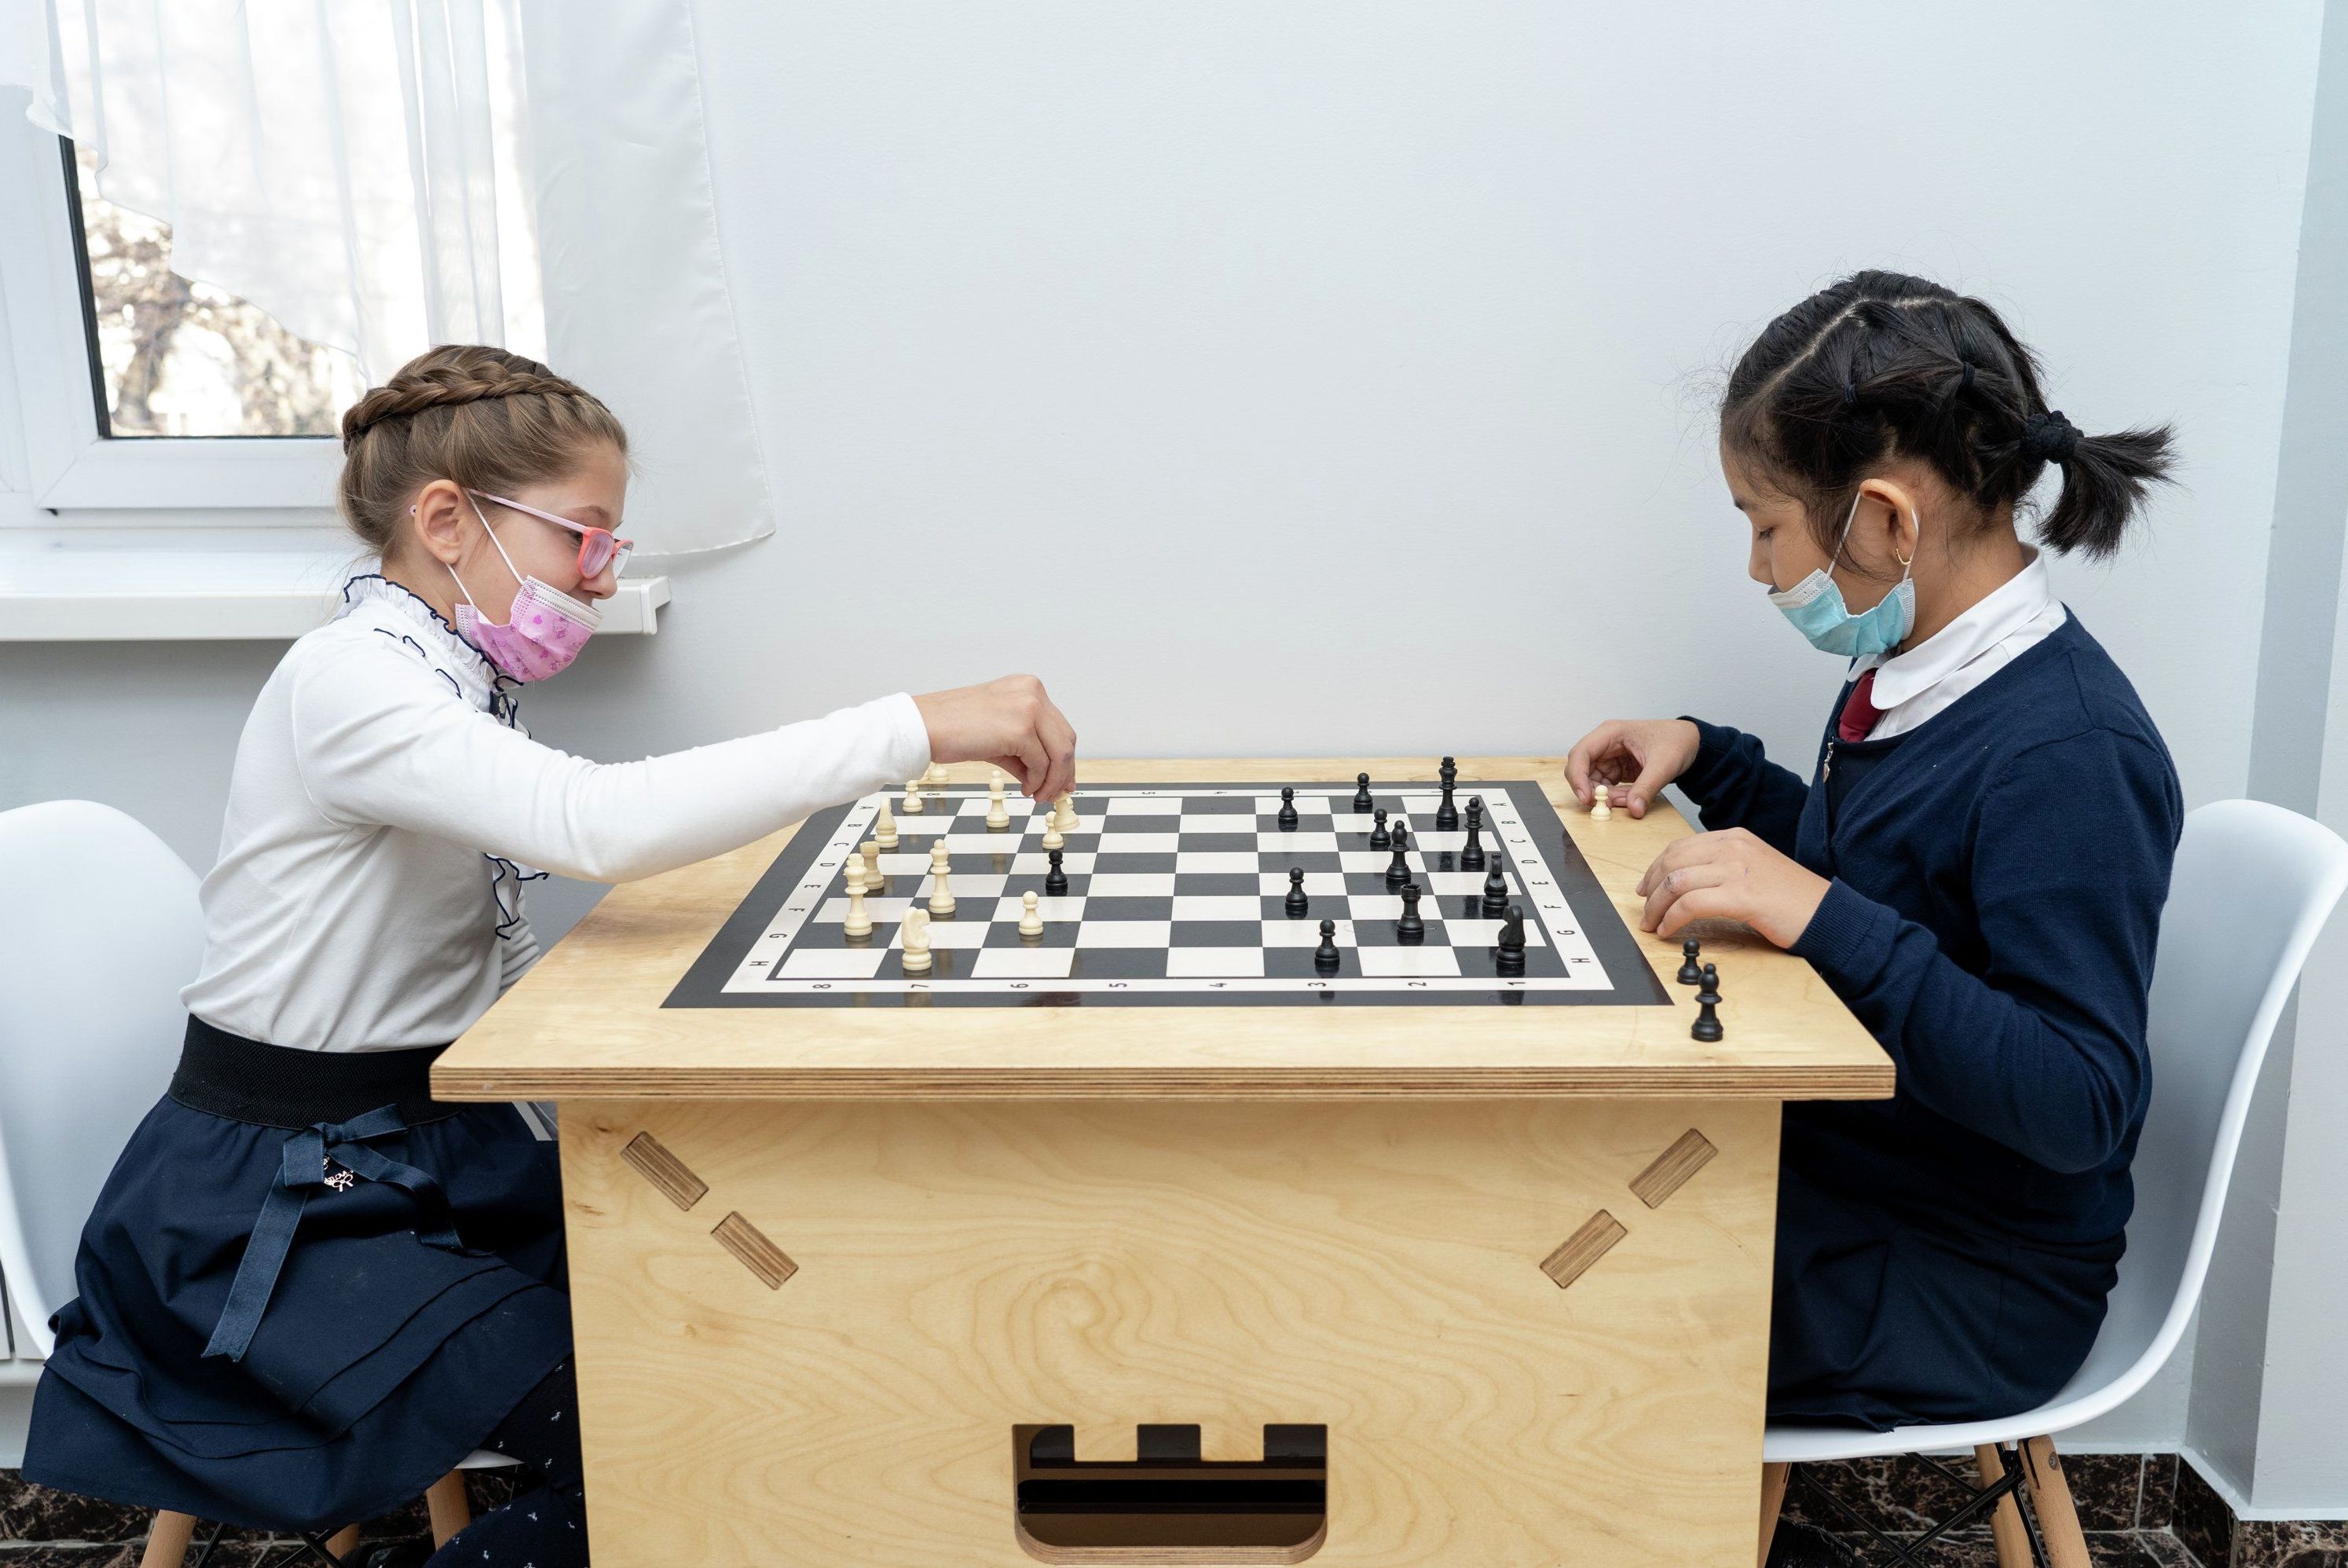 Во внеурочное время дети могут поиграть в шахматы в коридорах школы